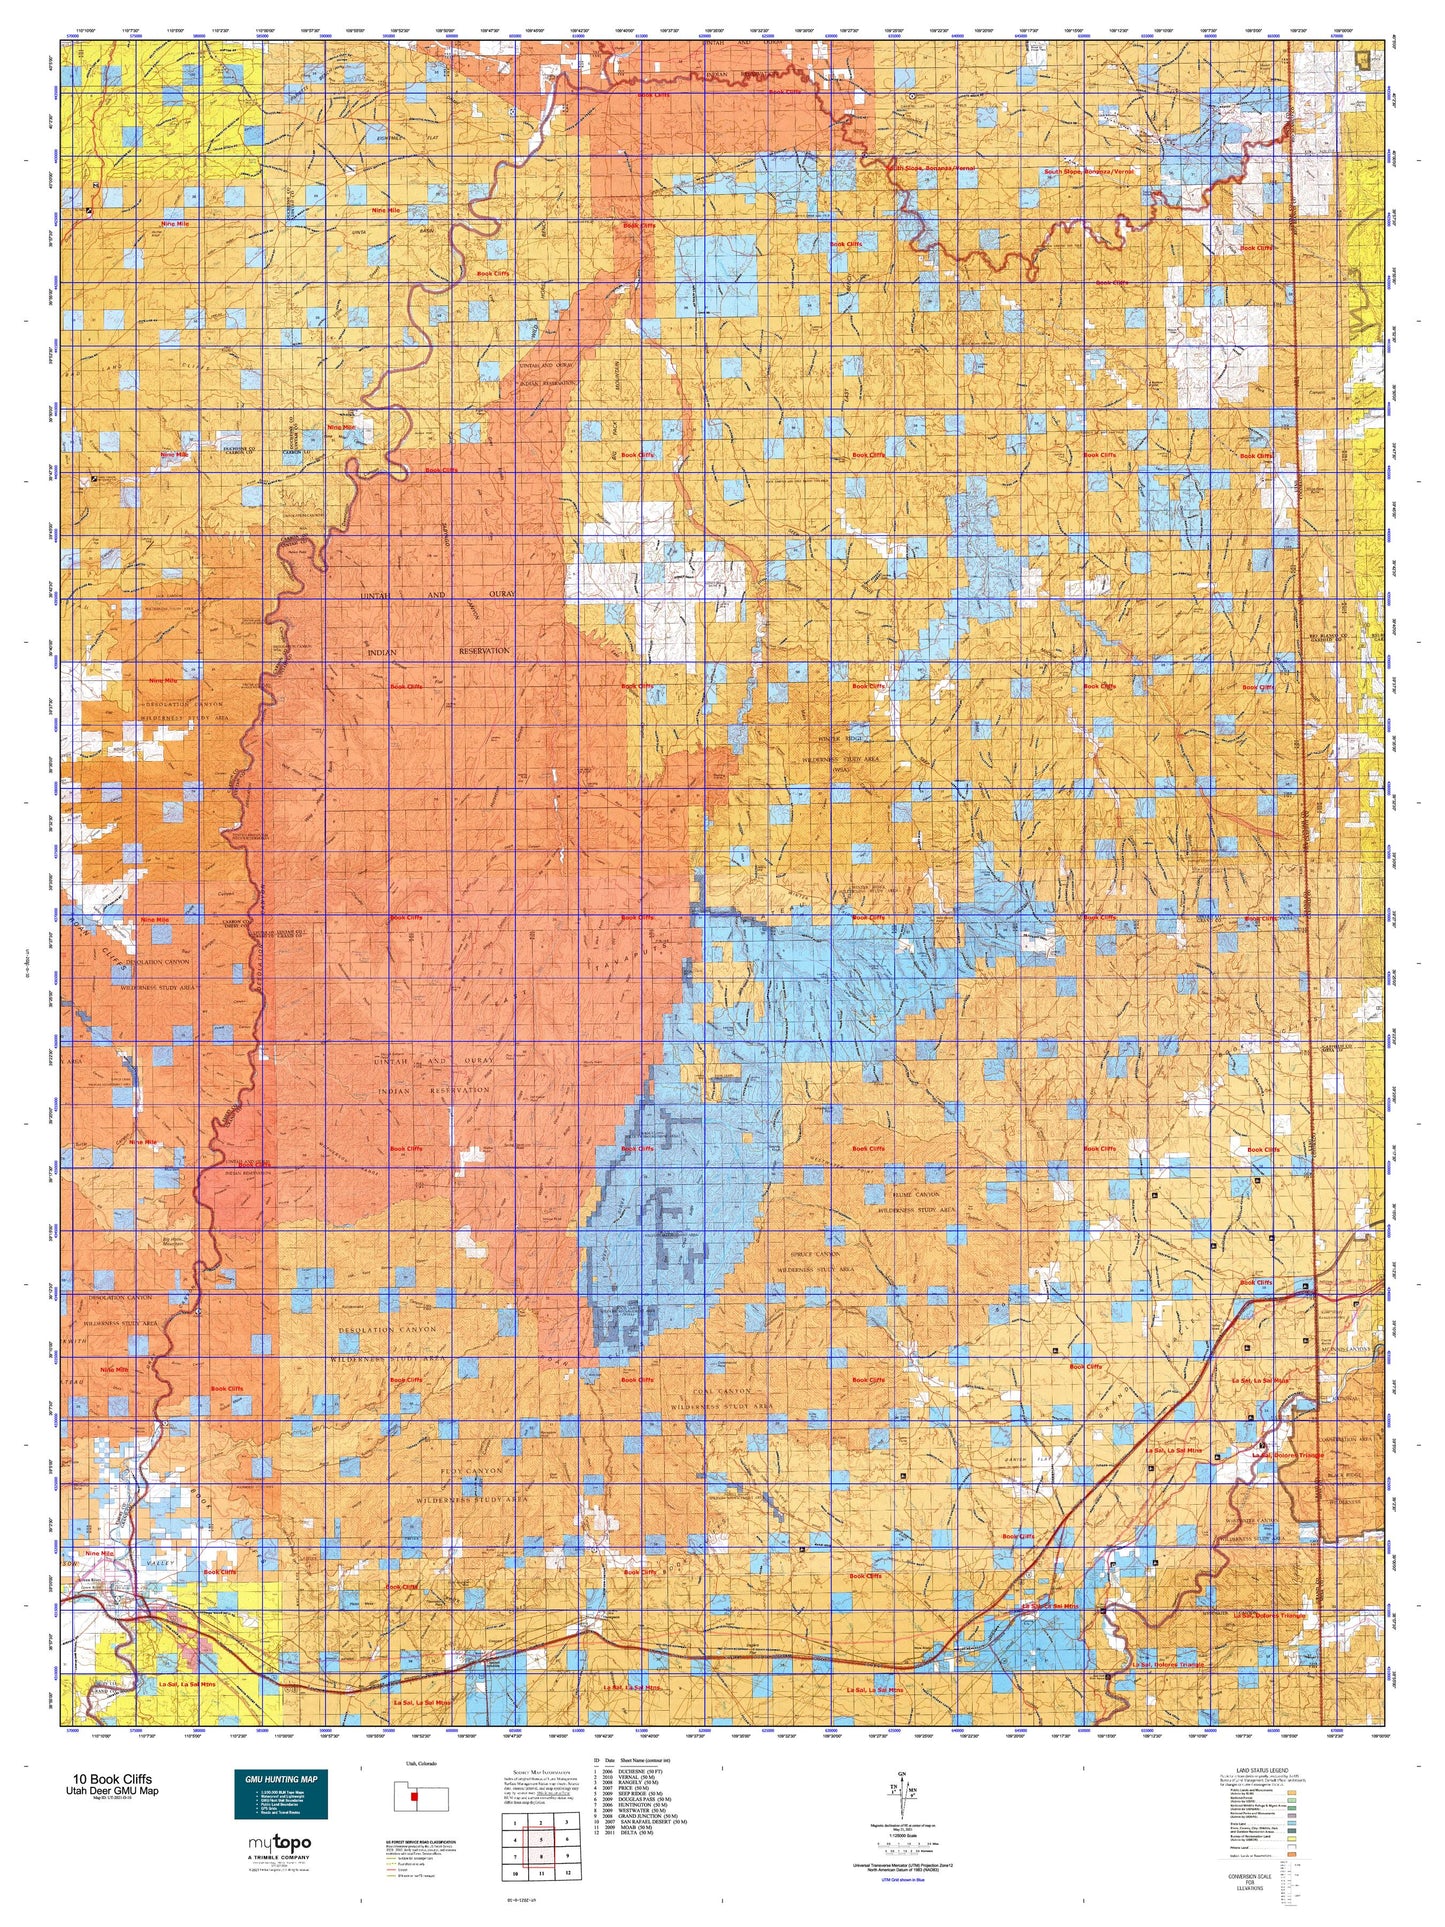 Utah Deer GMU 10 Book Cliffs Map Image